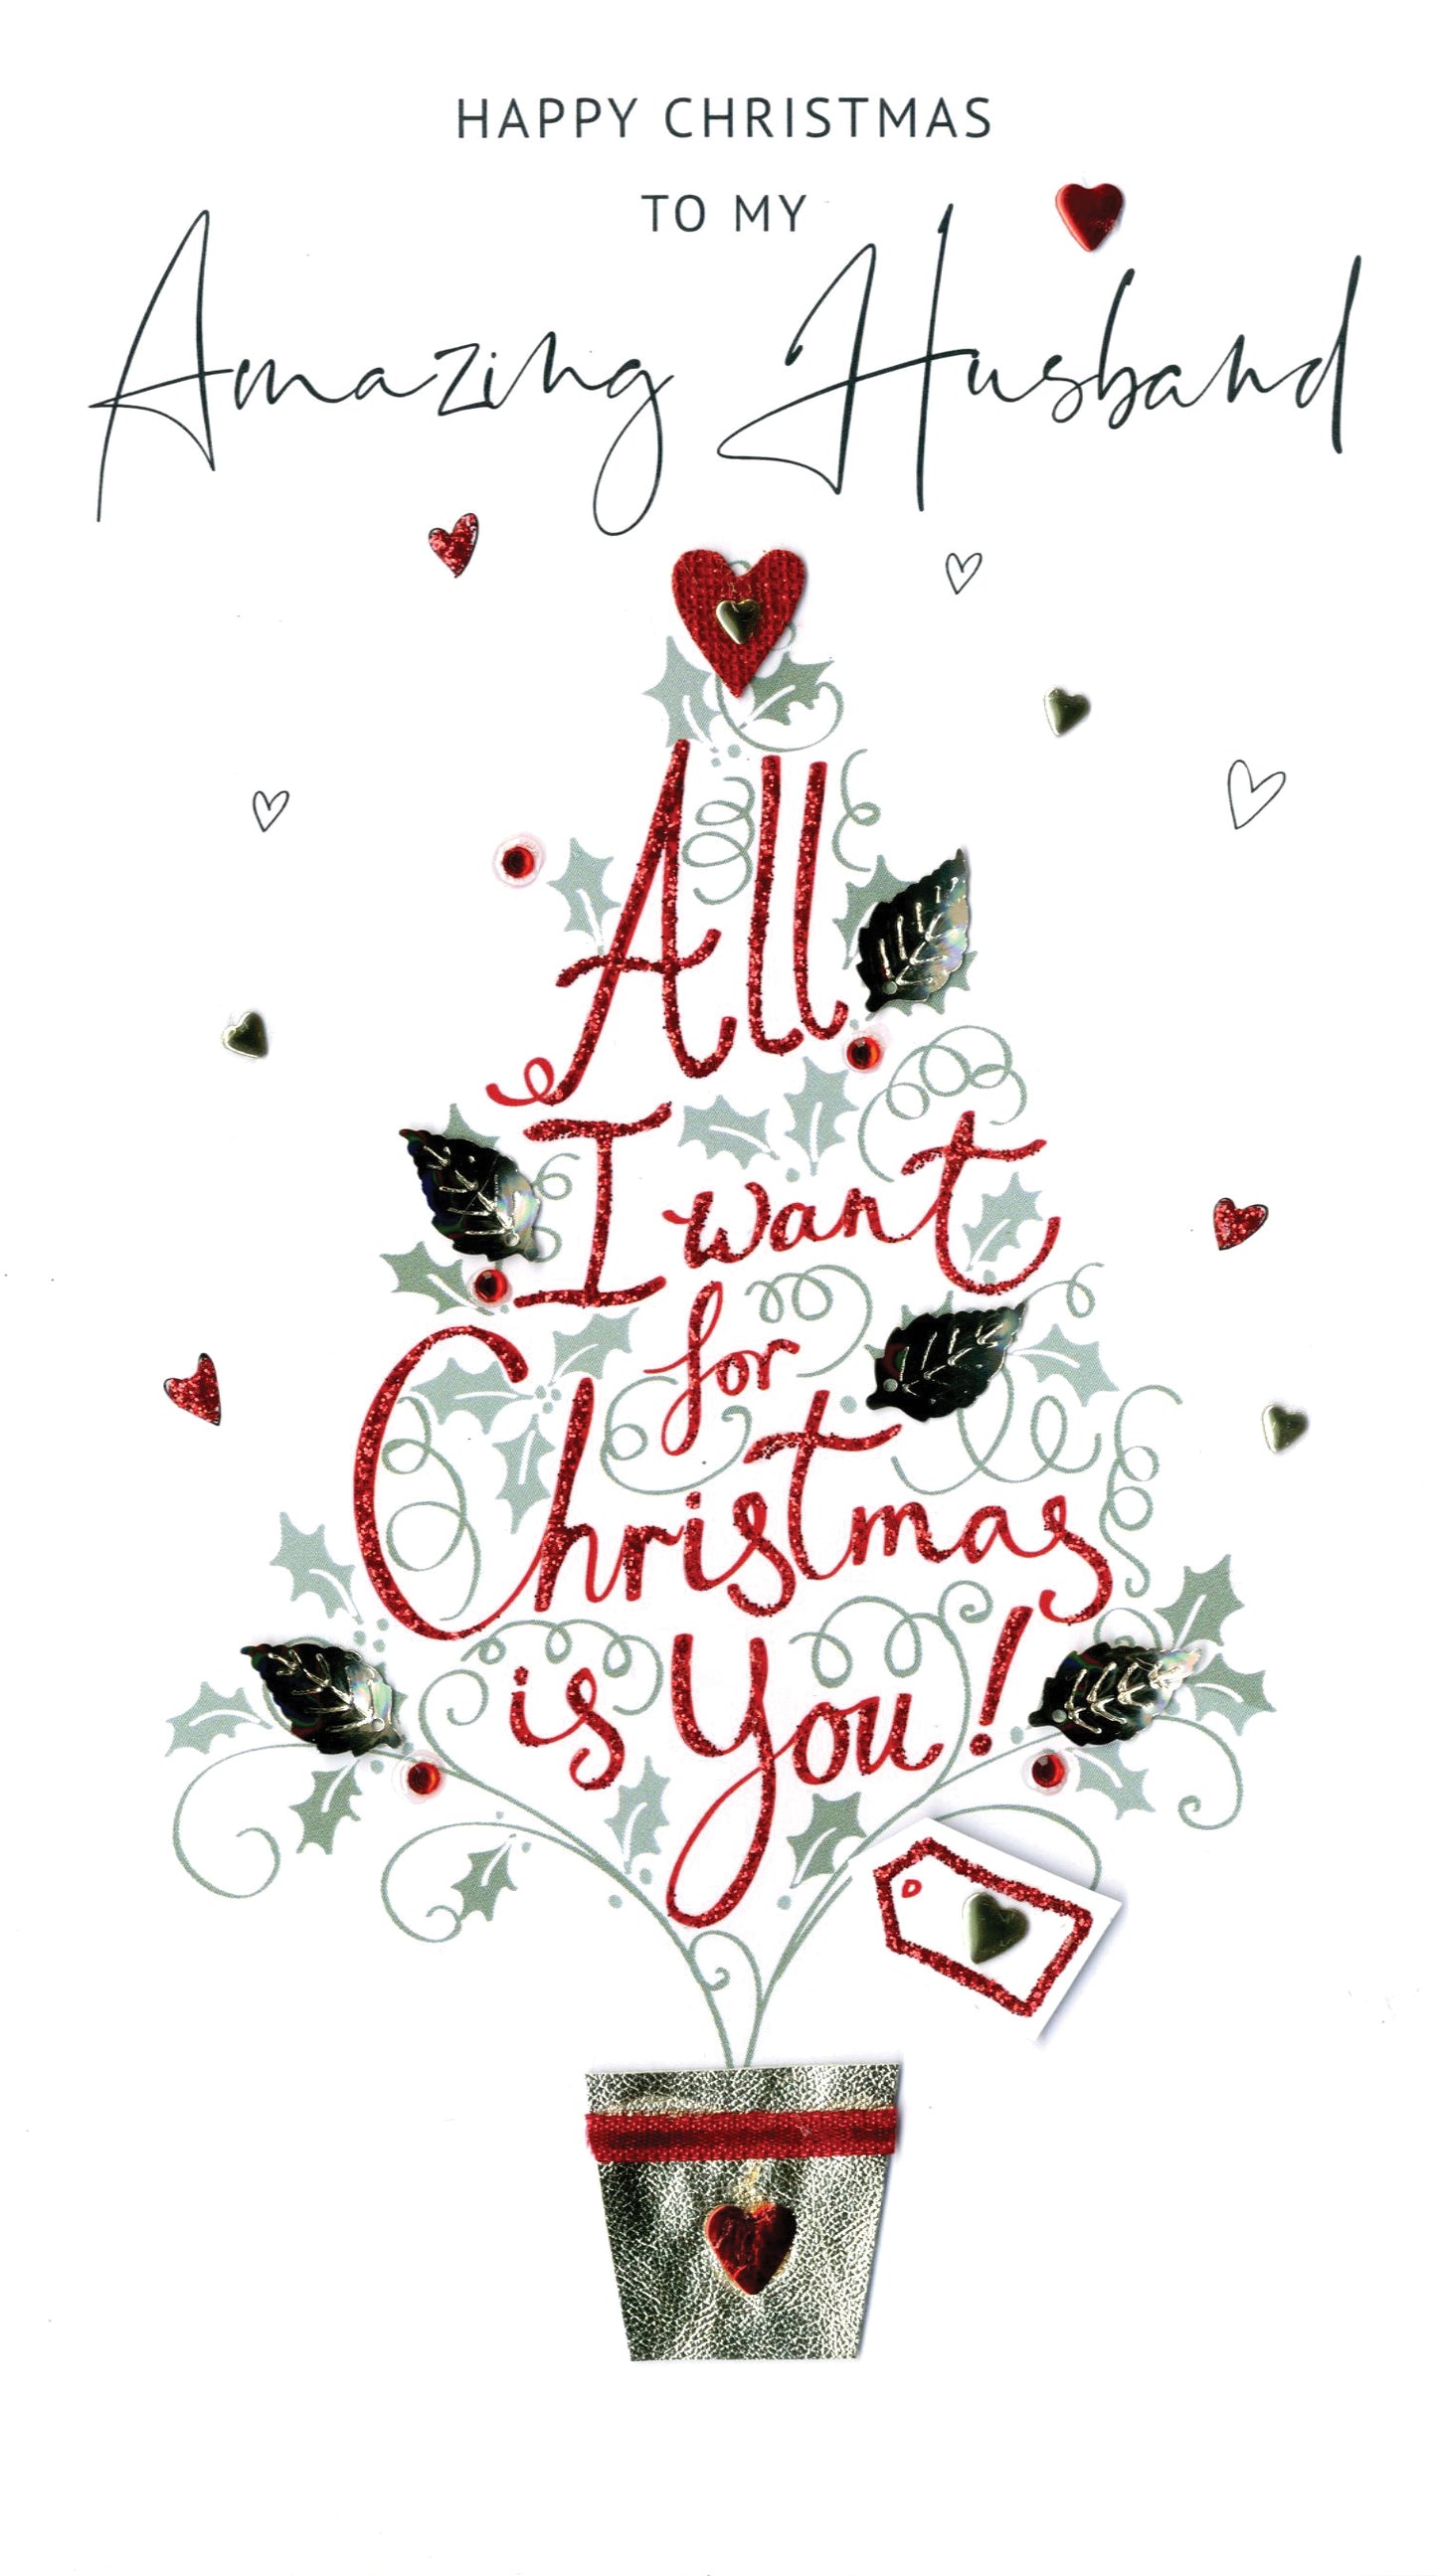 Amazing Husband Embellished Christmas Card Hand-Finished